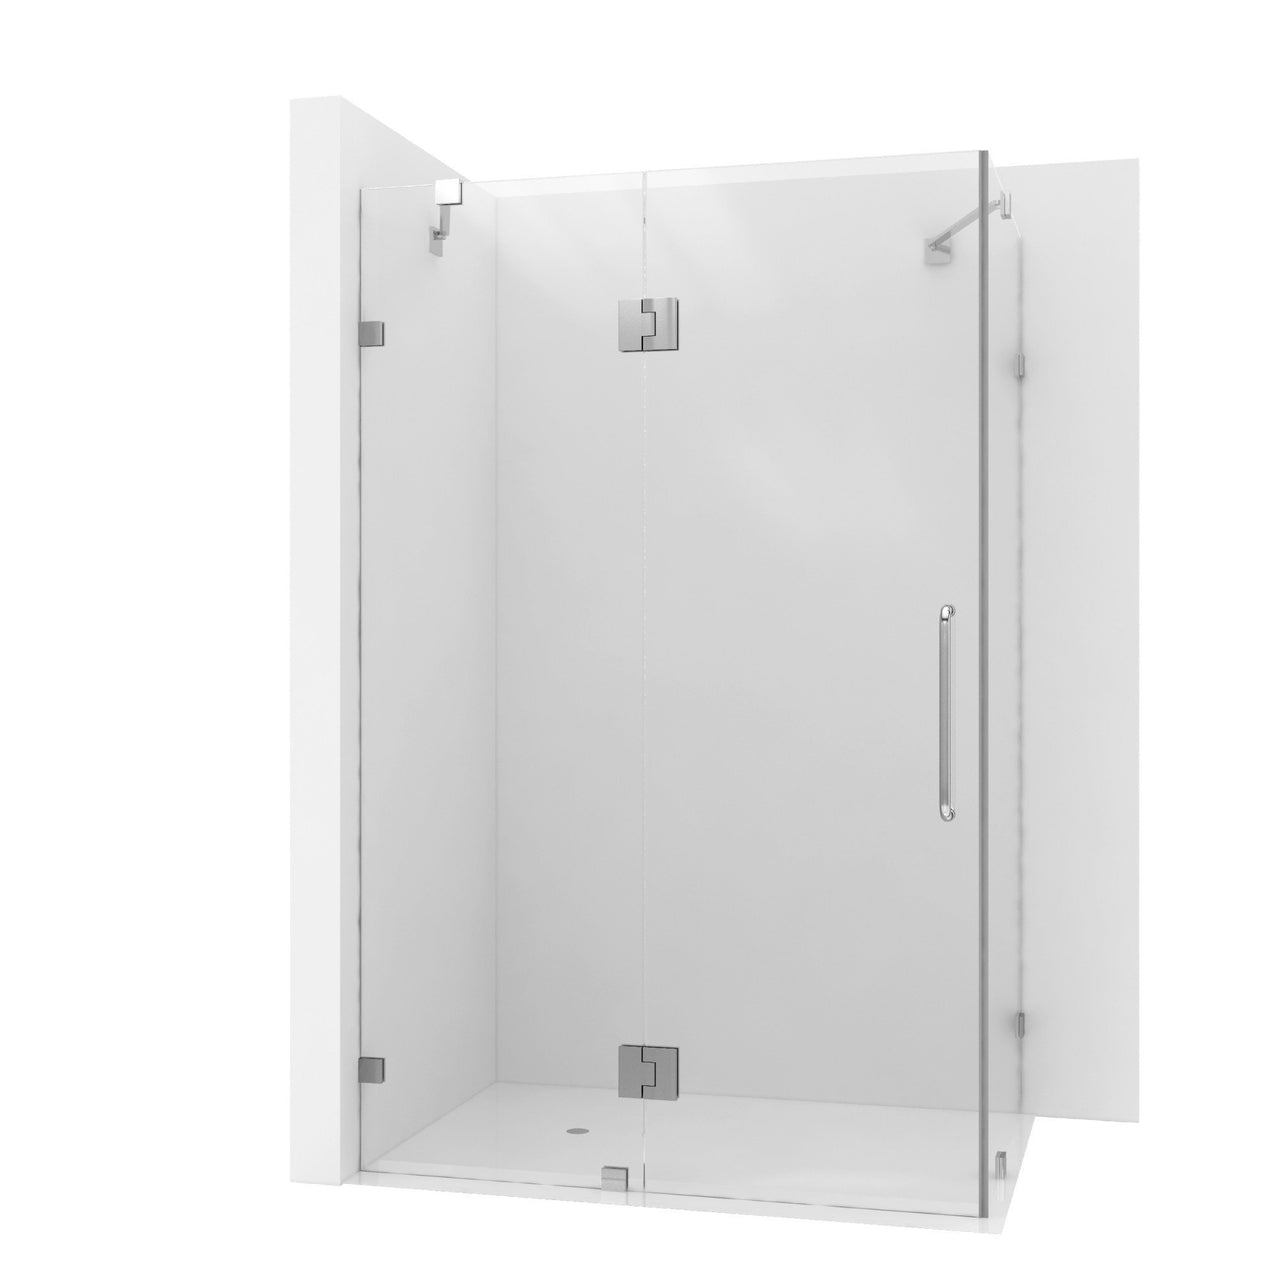 ANZZI Archon Series SD-AZ03-01CH Shower Doors Shower Doors ANZZI 